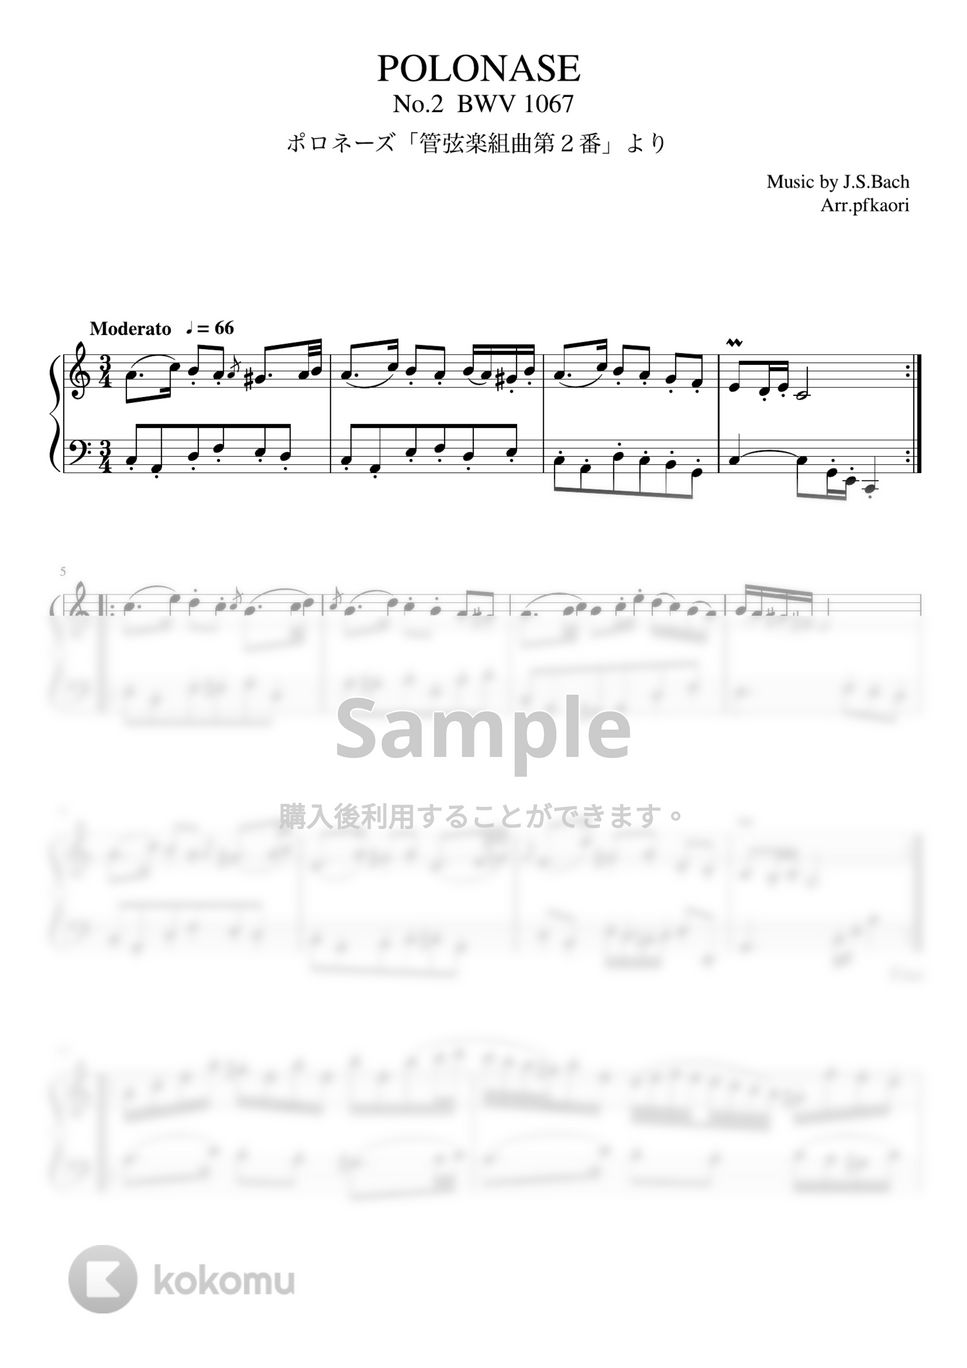 バッハ - 管弦楽第2番「ポロネーズ」 (Am/ピアノソロ中級) by pfkaori